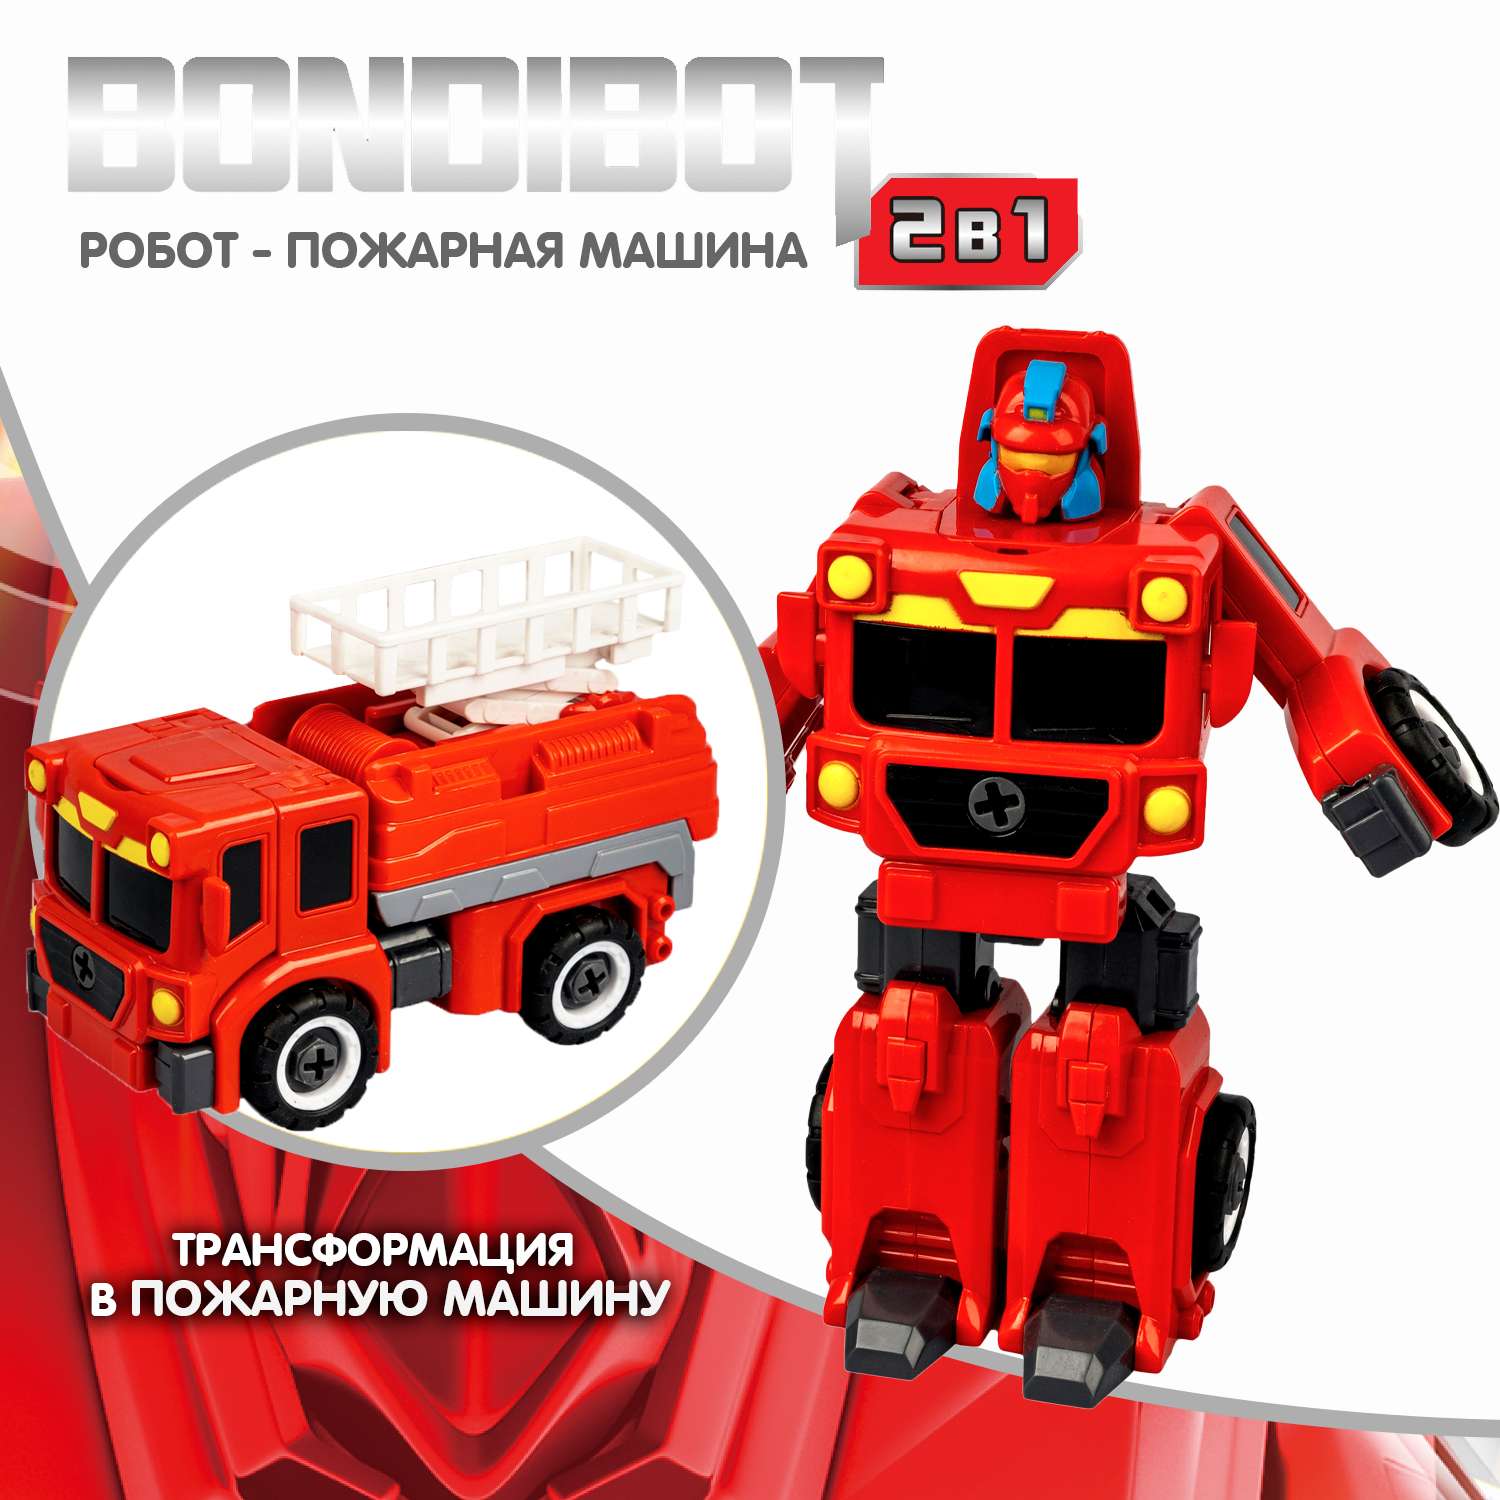 Трансформер-конструктор BONDIBON Bondibot Робот-пожарная машина автовышка 2 в 1 - фото 2